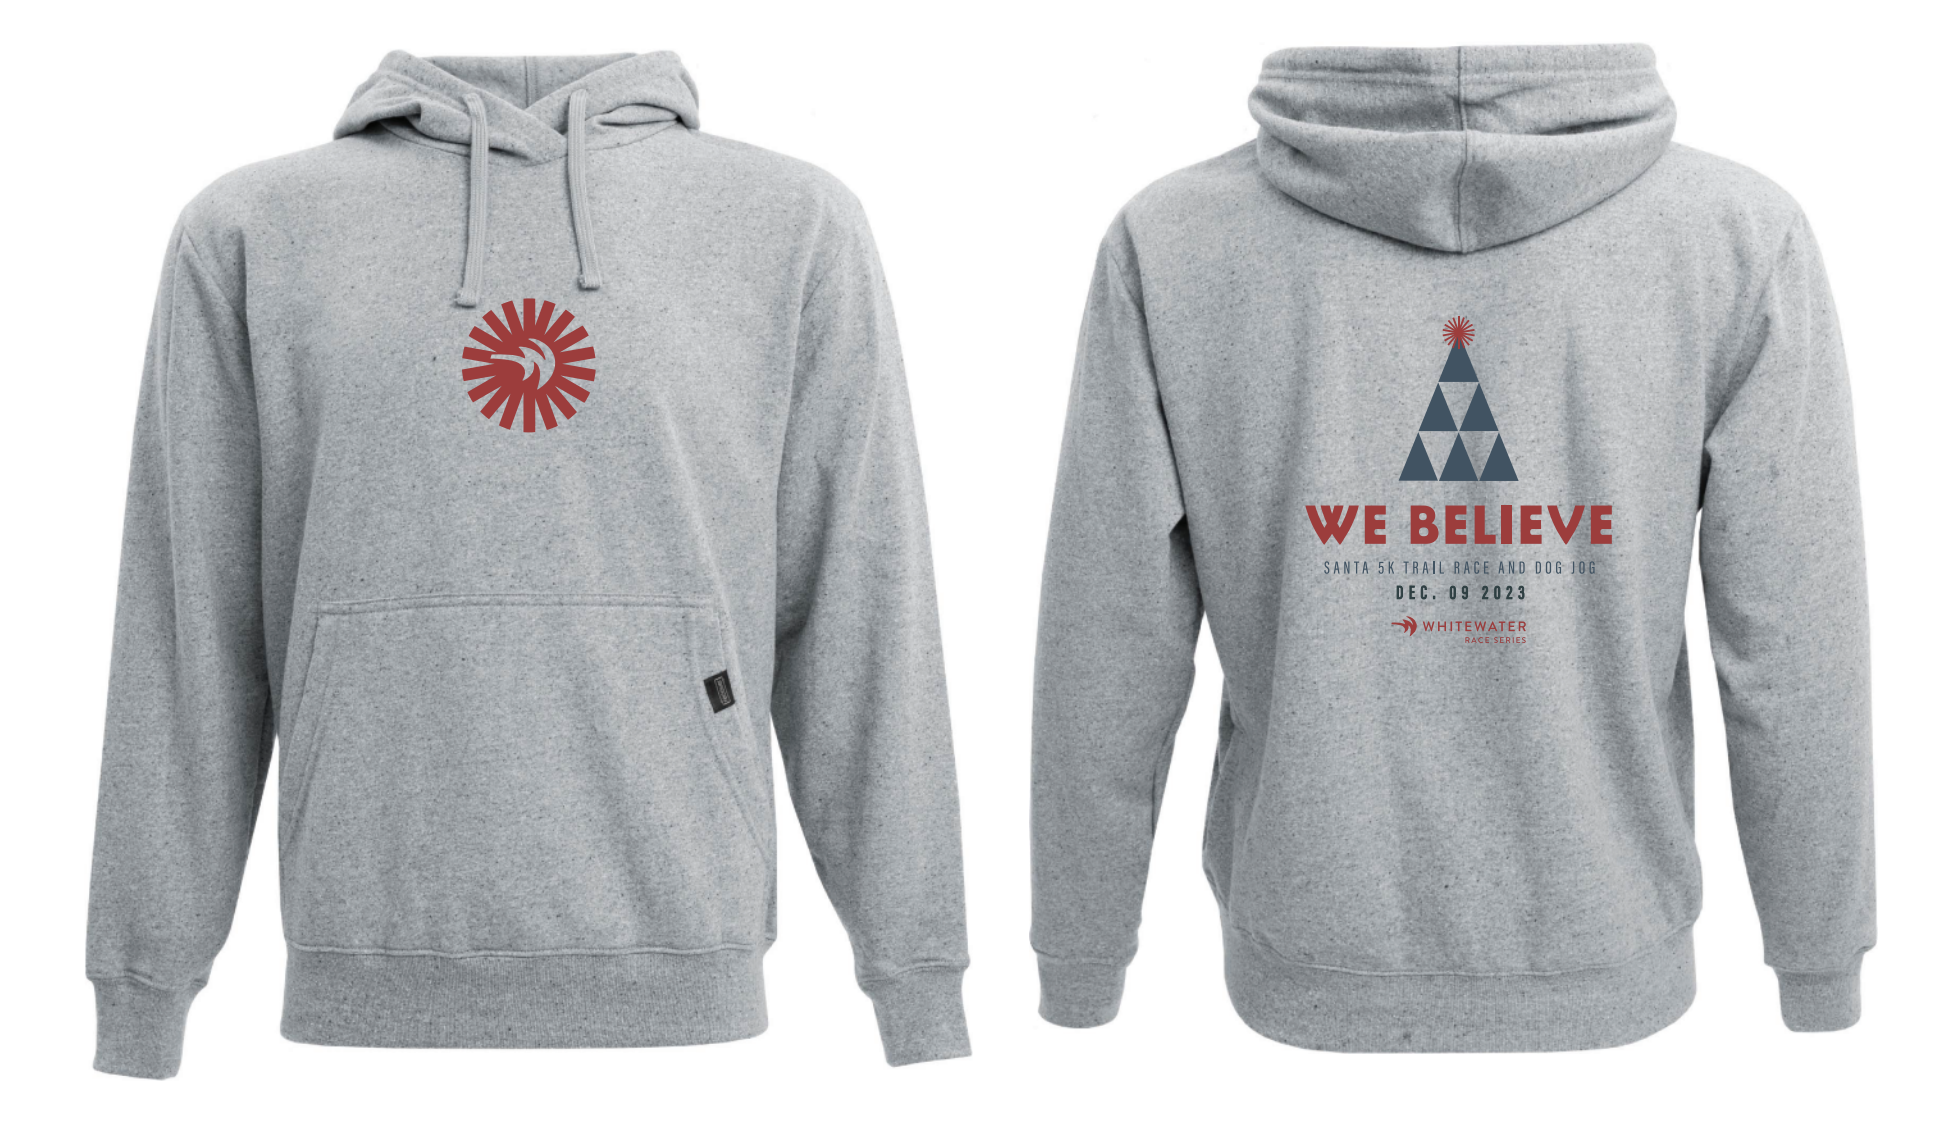 We Believe New Sweatshirt Design